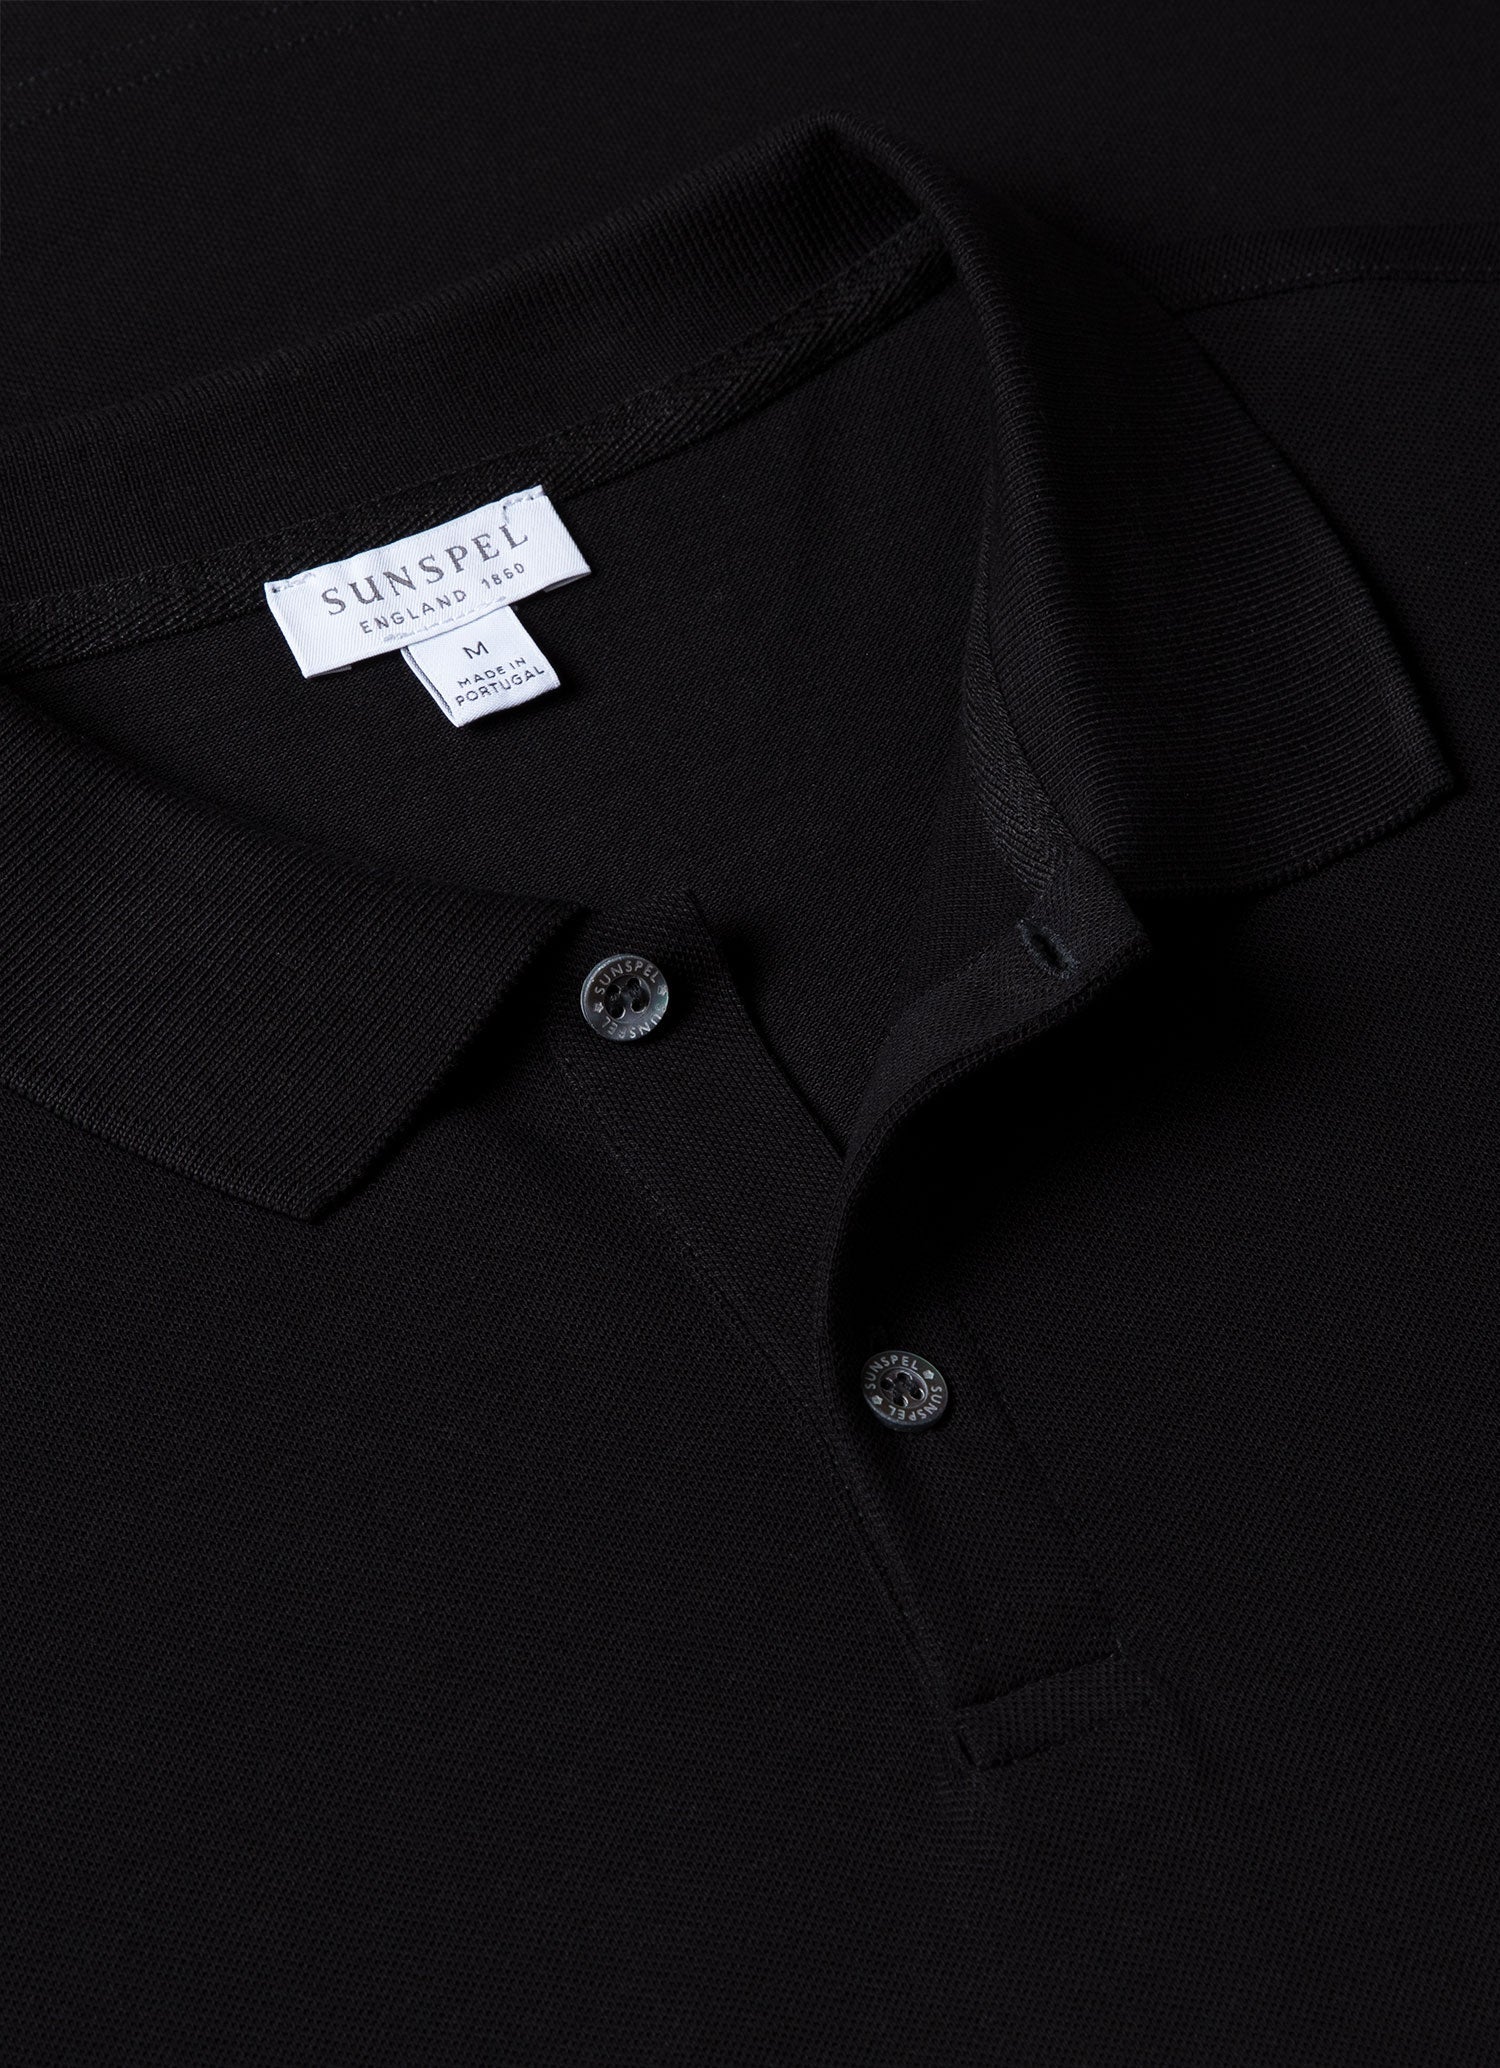 Men's Piqué Polo Shirt in Black | Sunspel